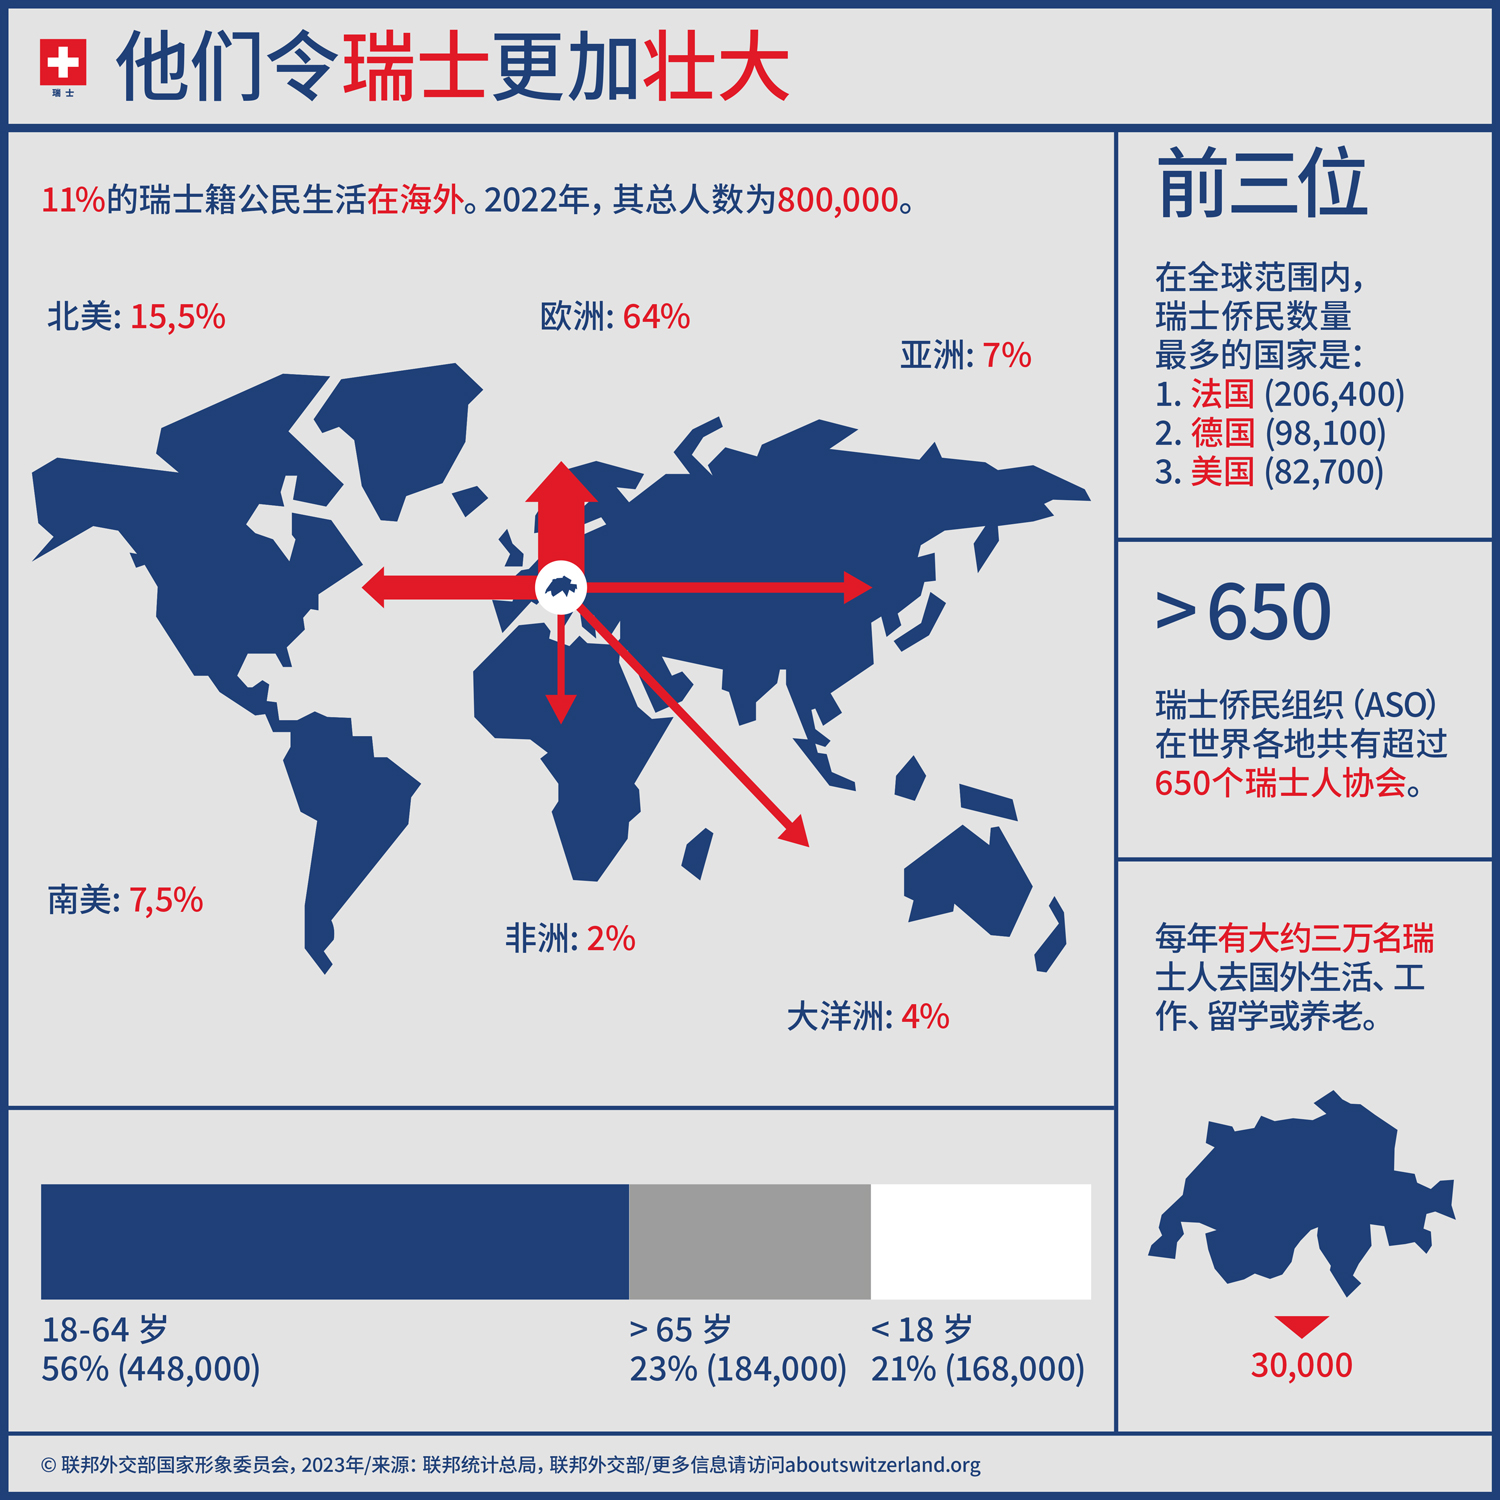 这张信息图上显示了关于海外瑞士人的数字和事实。